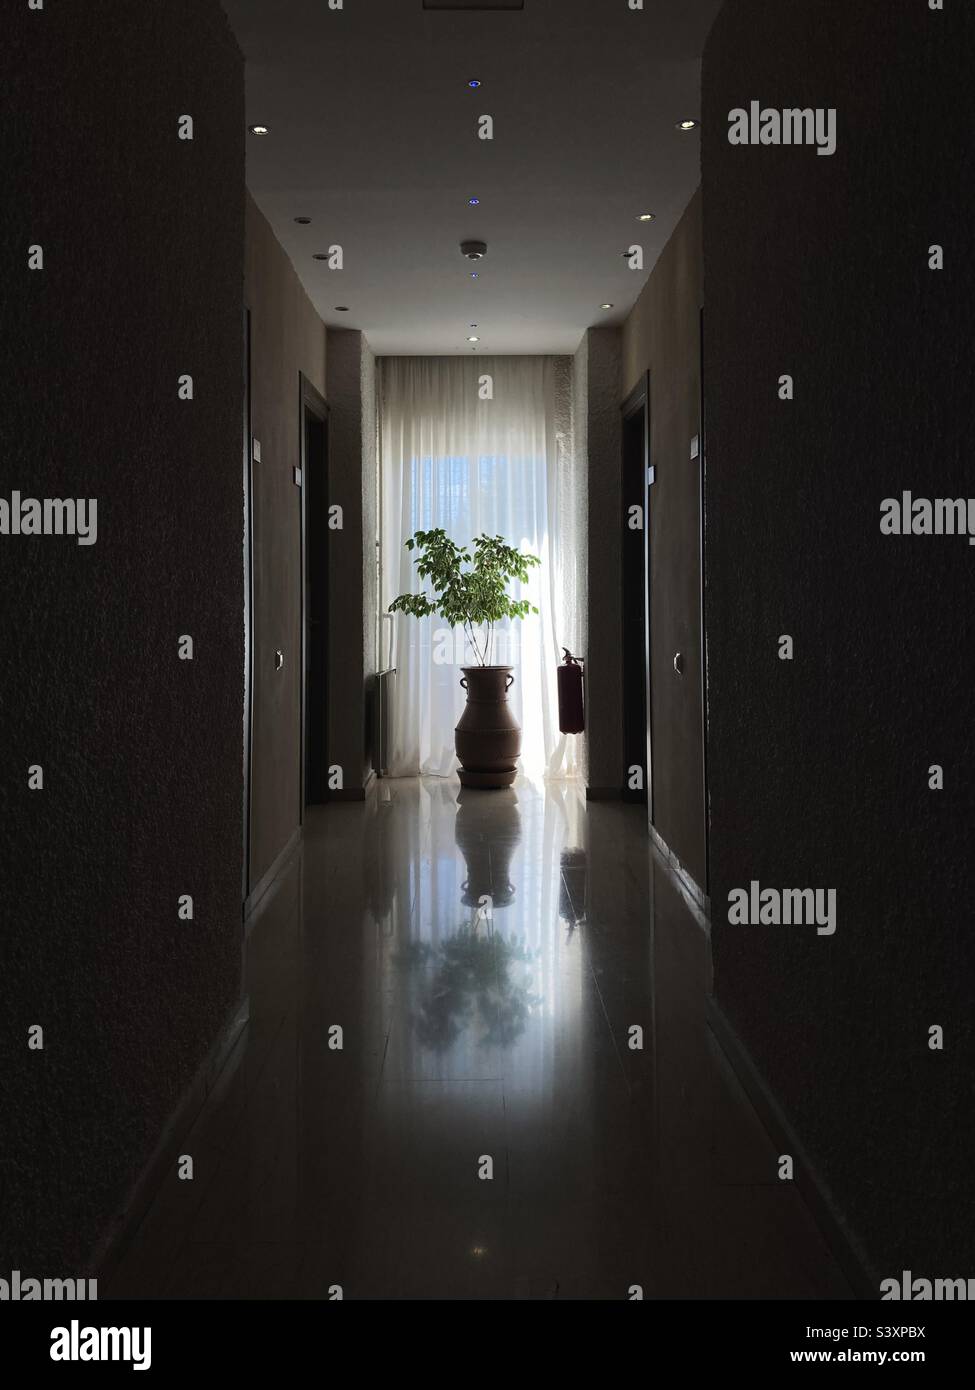 Topfpflanze in einem Hotelkorridor Stockfoto